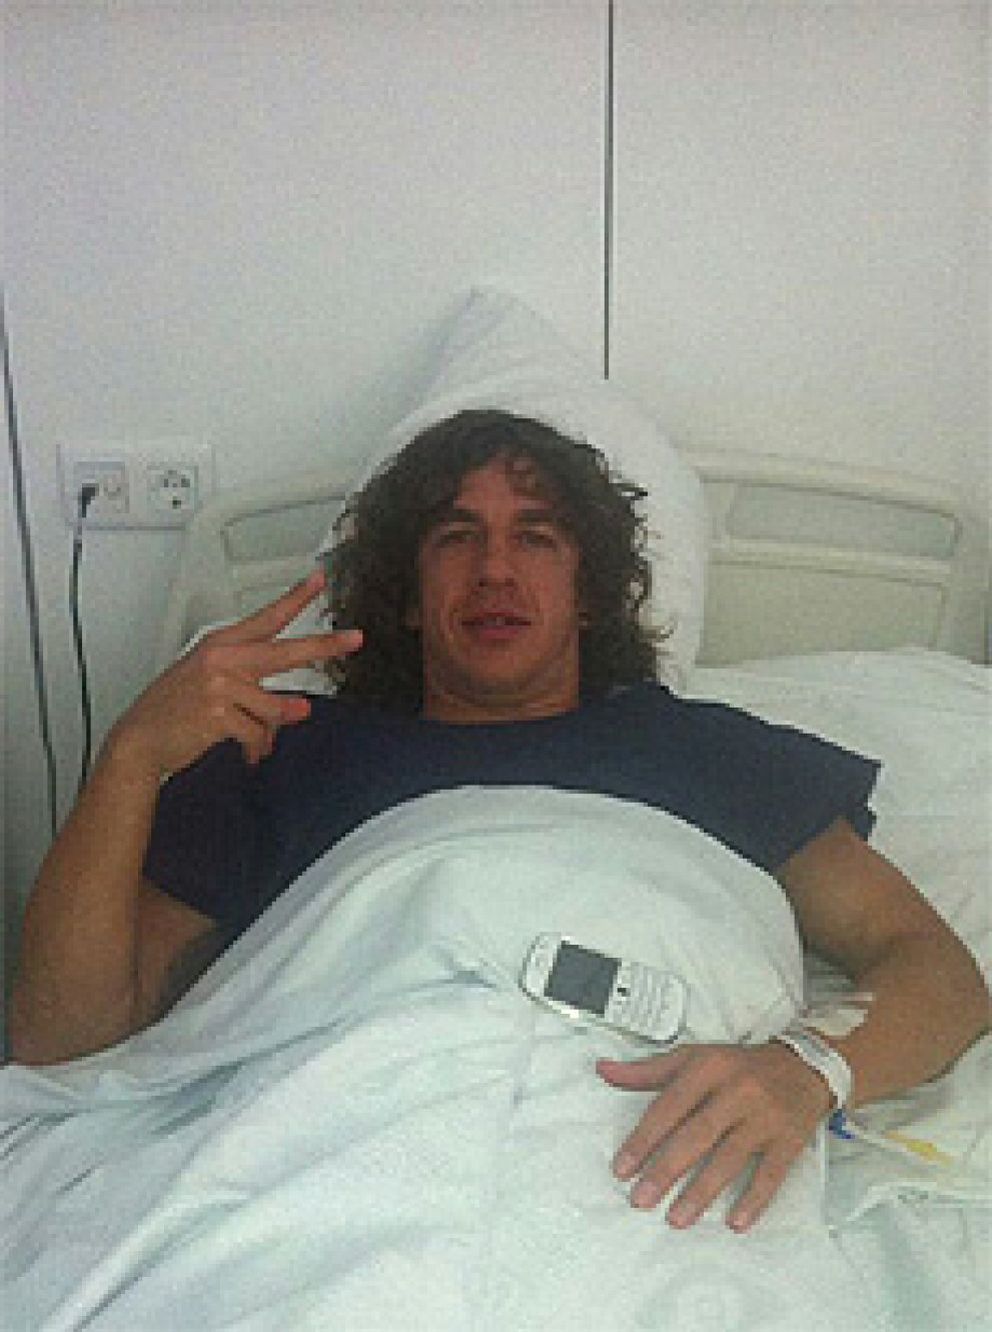 Foto: Puyol, dos meses de baja, después de que en la operación haya ido "todo bien"